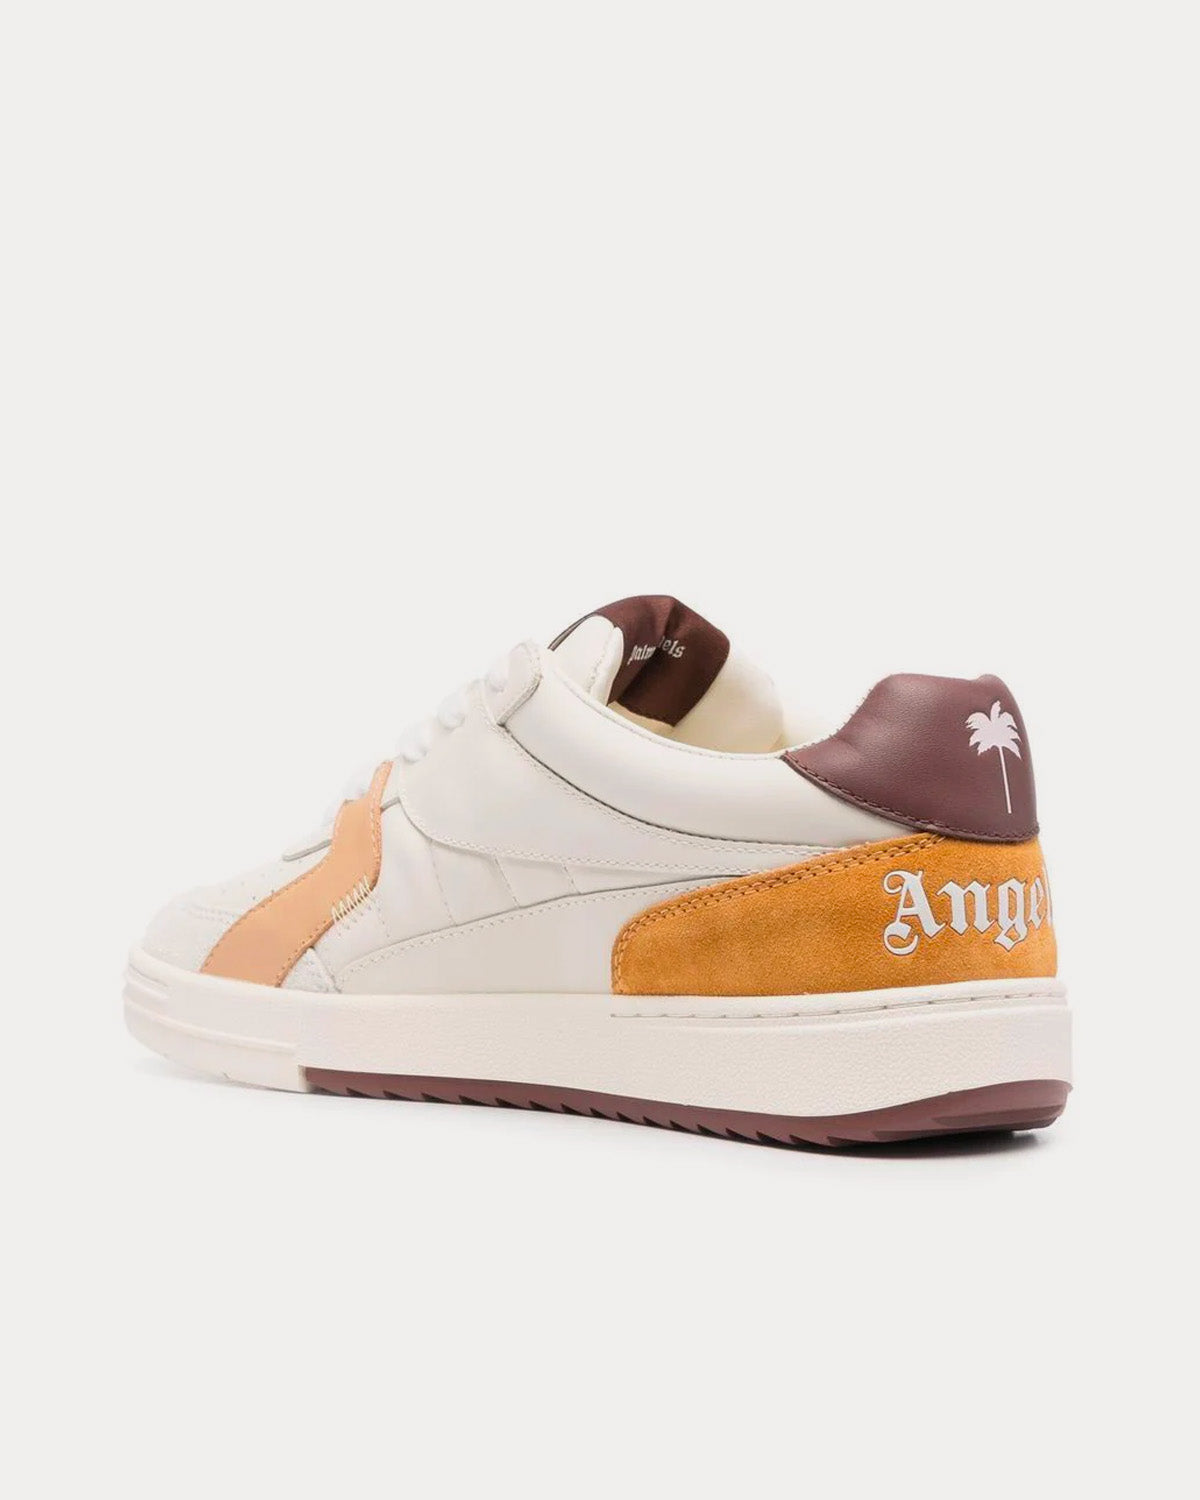 Palm Angels - University Beige / Brown Low Top Sneakers